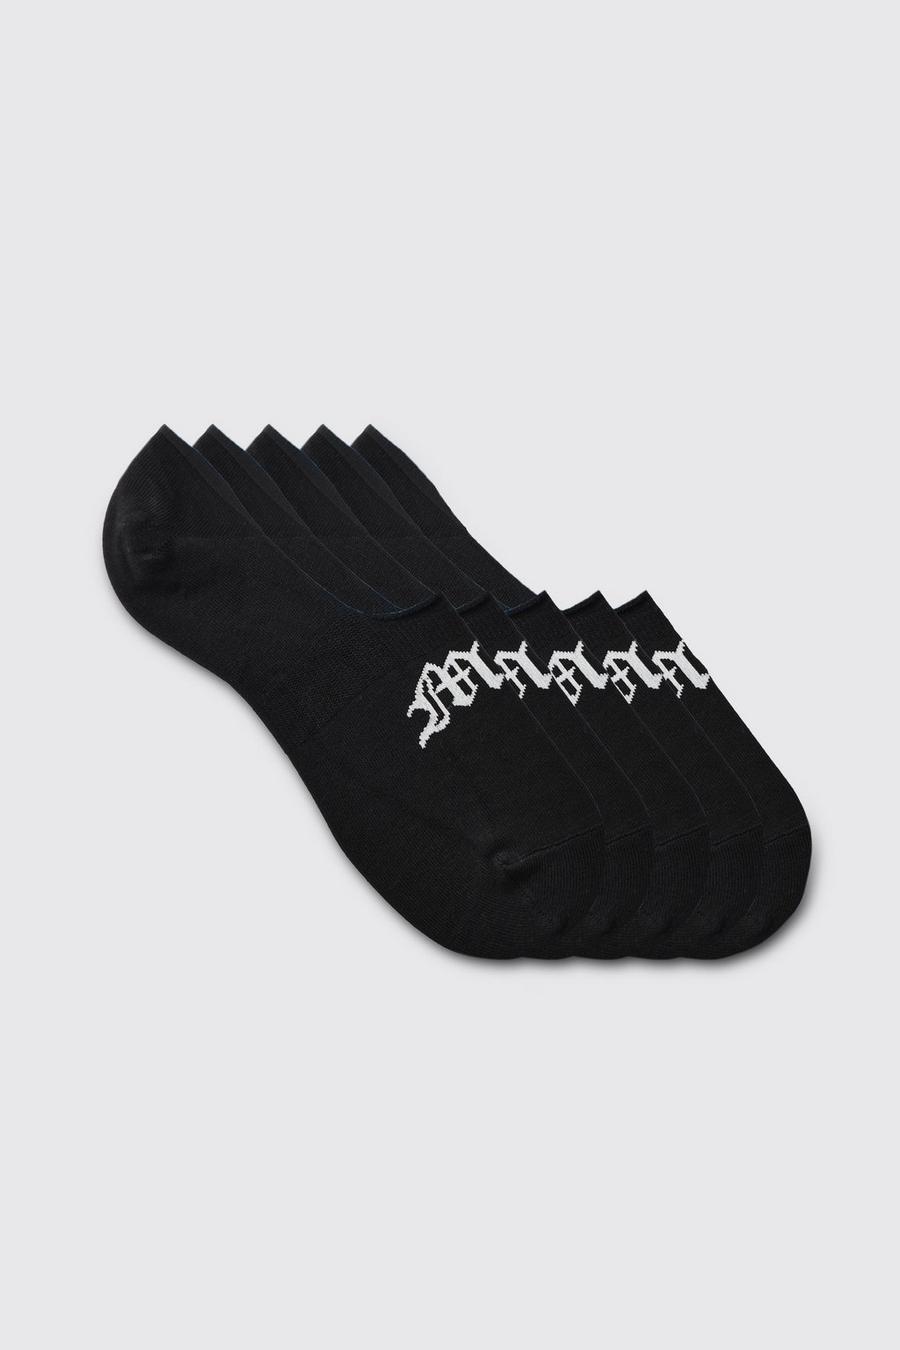 Pack de 5 pares de calcetines invisibles con letras MAN góticas, Black